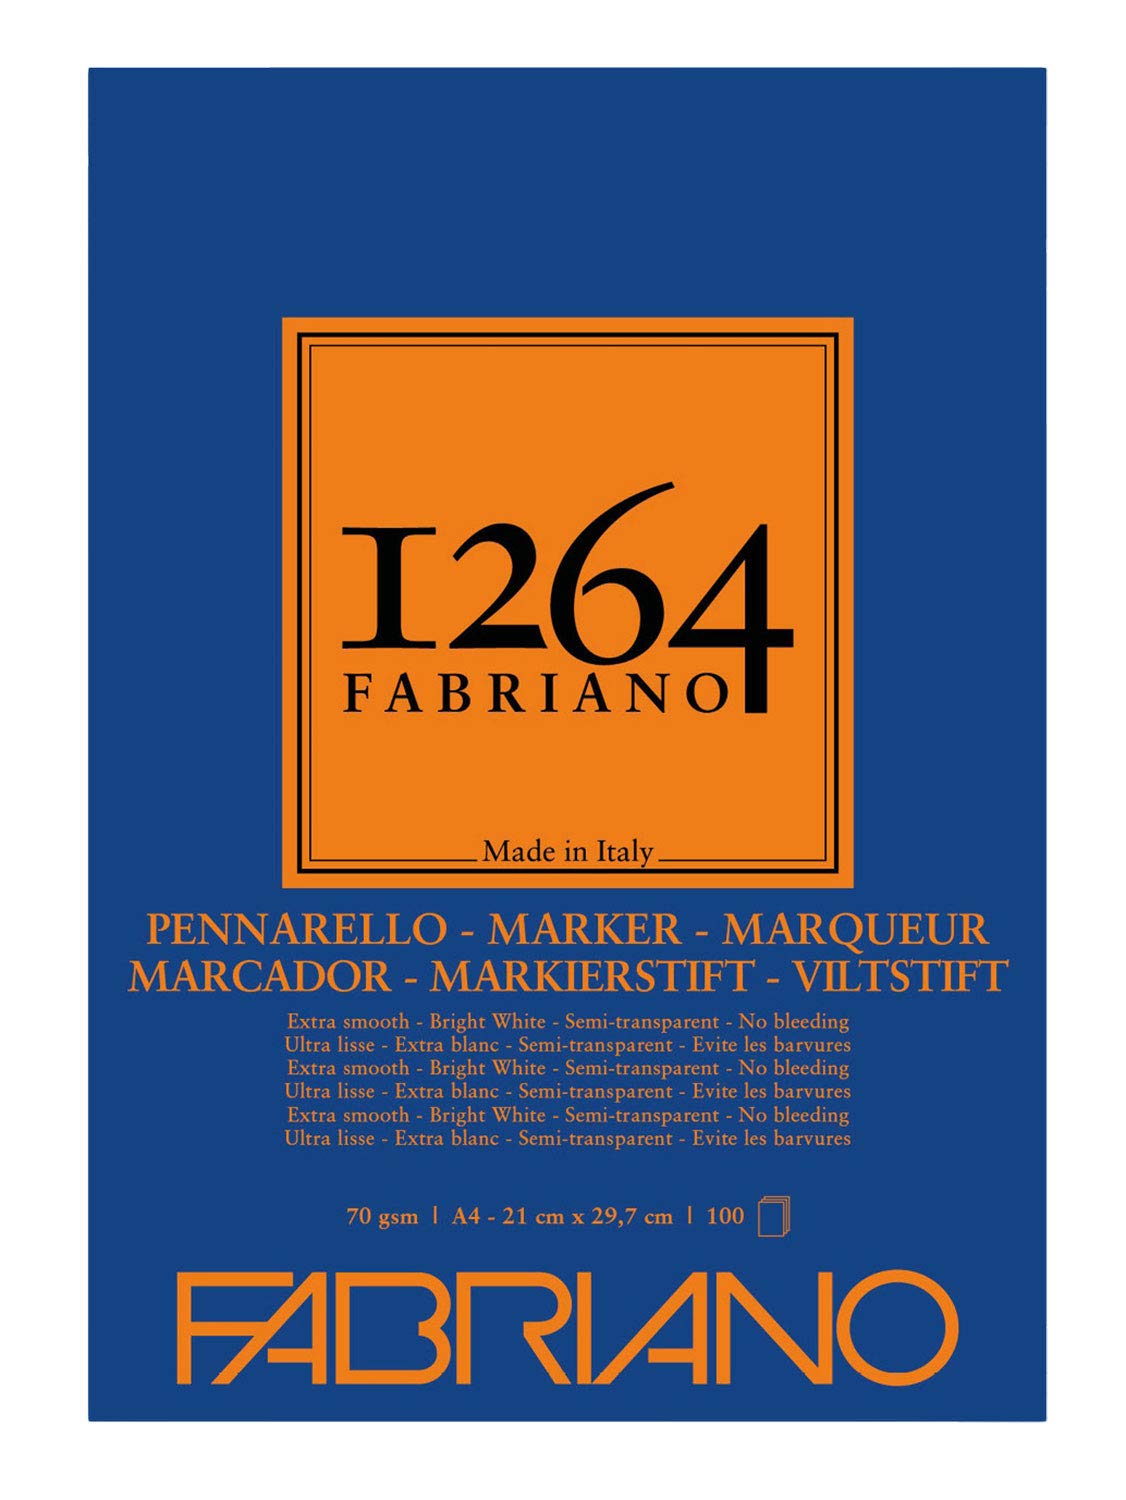 Blocco Fabriano 1264 marker A4 gr.70 fg.100 collato in testa